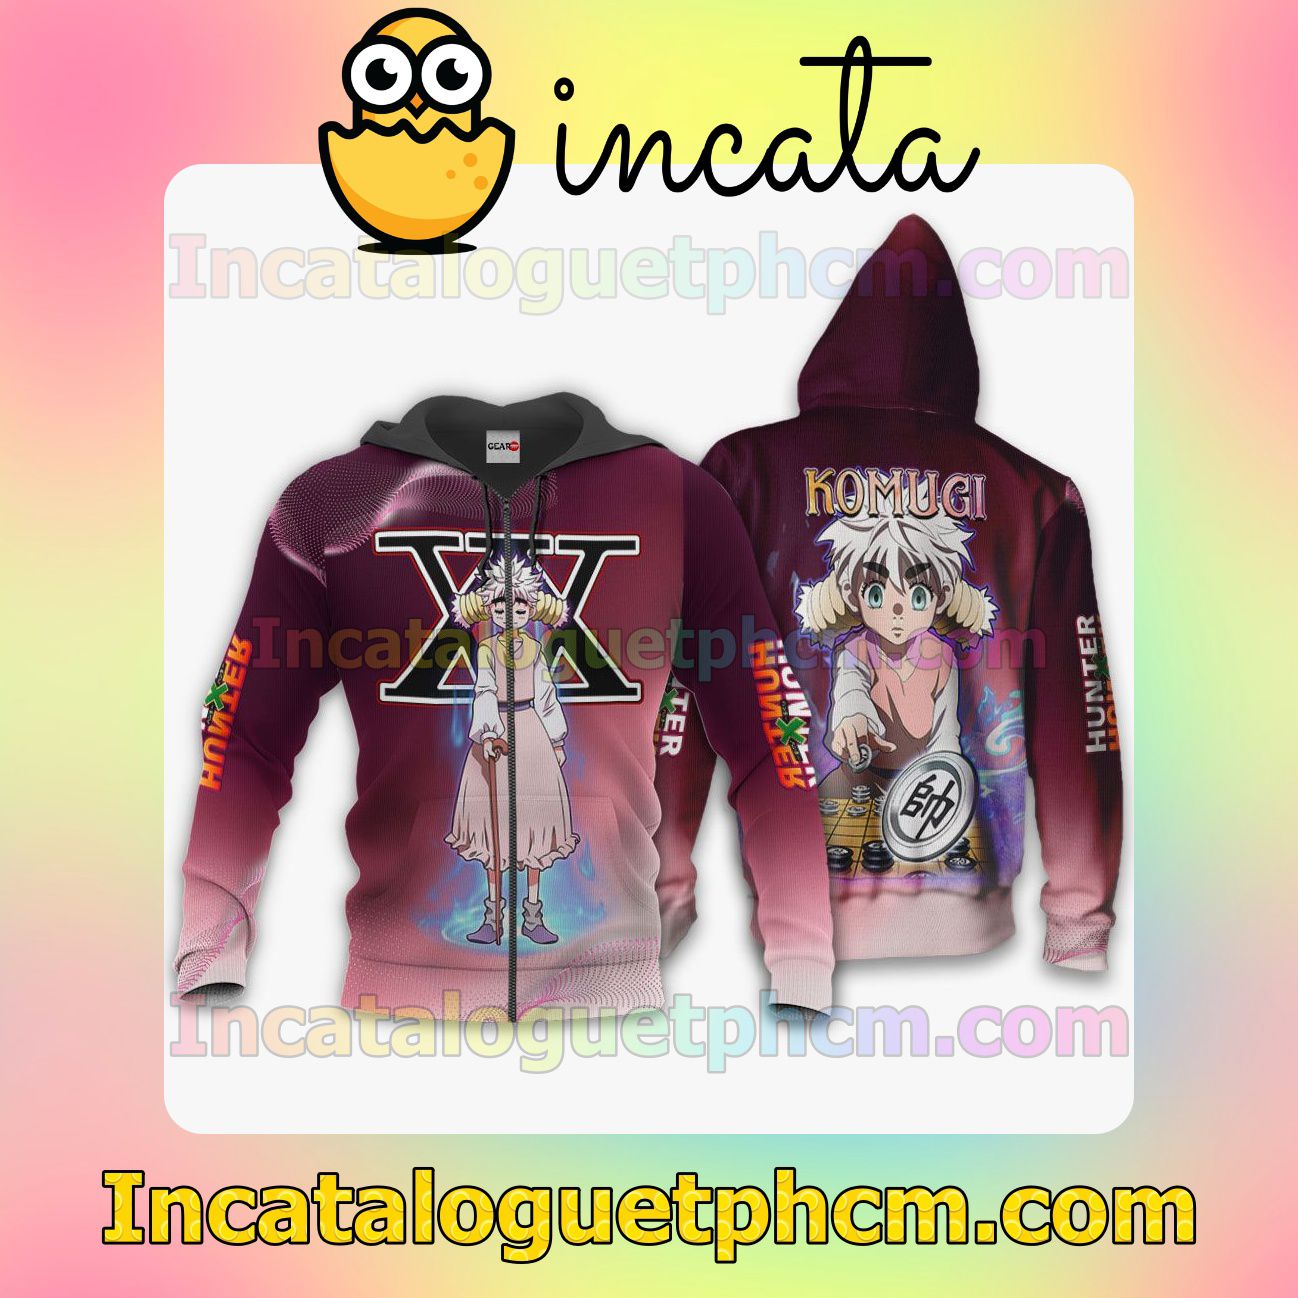 Komugi Anime Hunter x Hunter Clothing Merch Zip Hoodie Jacket Shirts